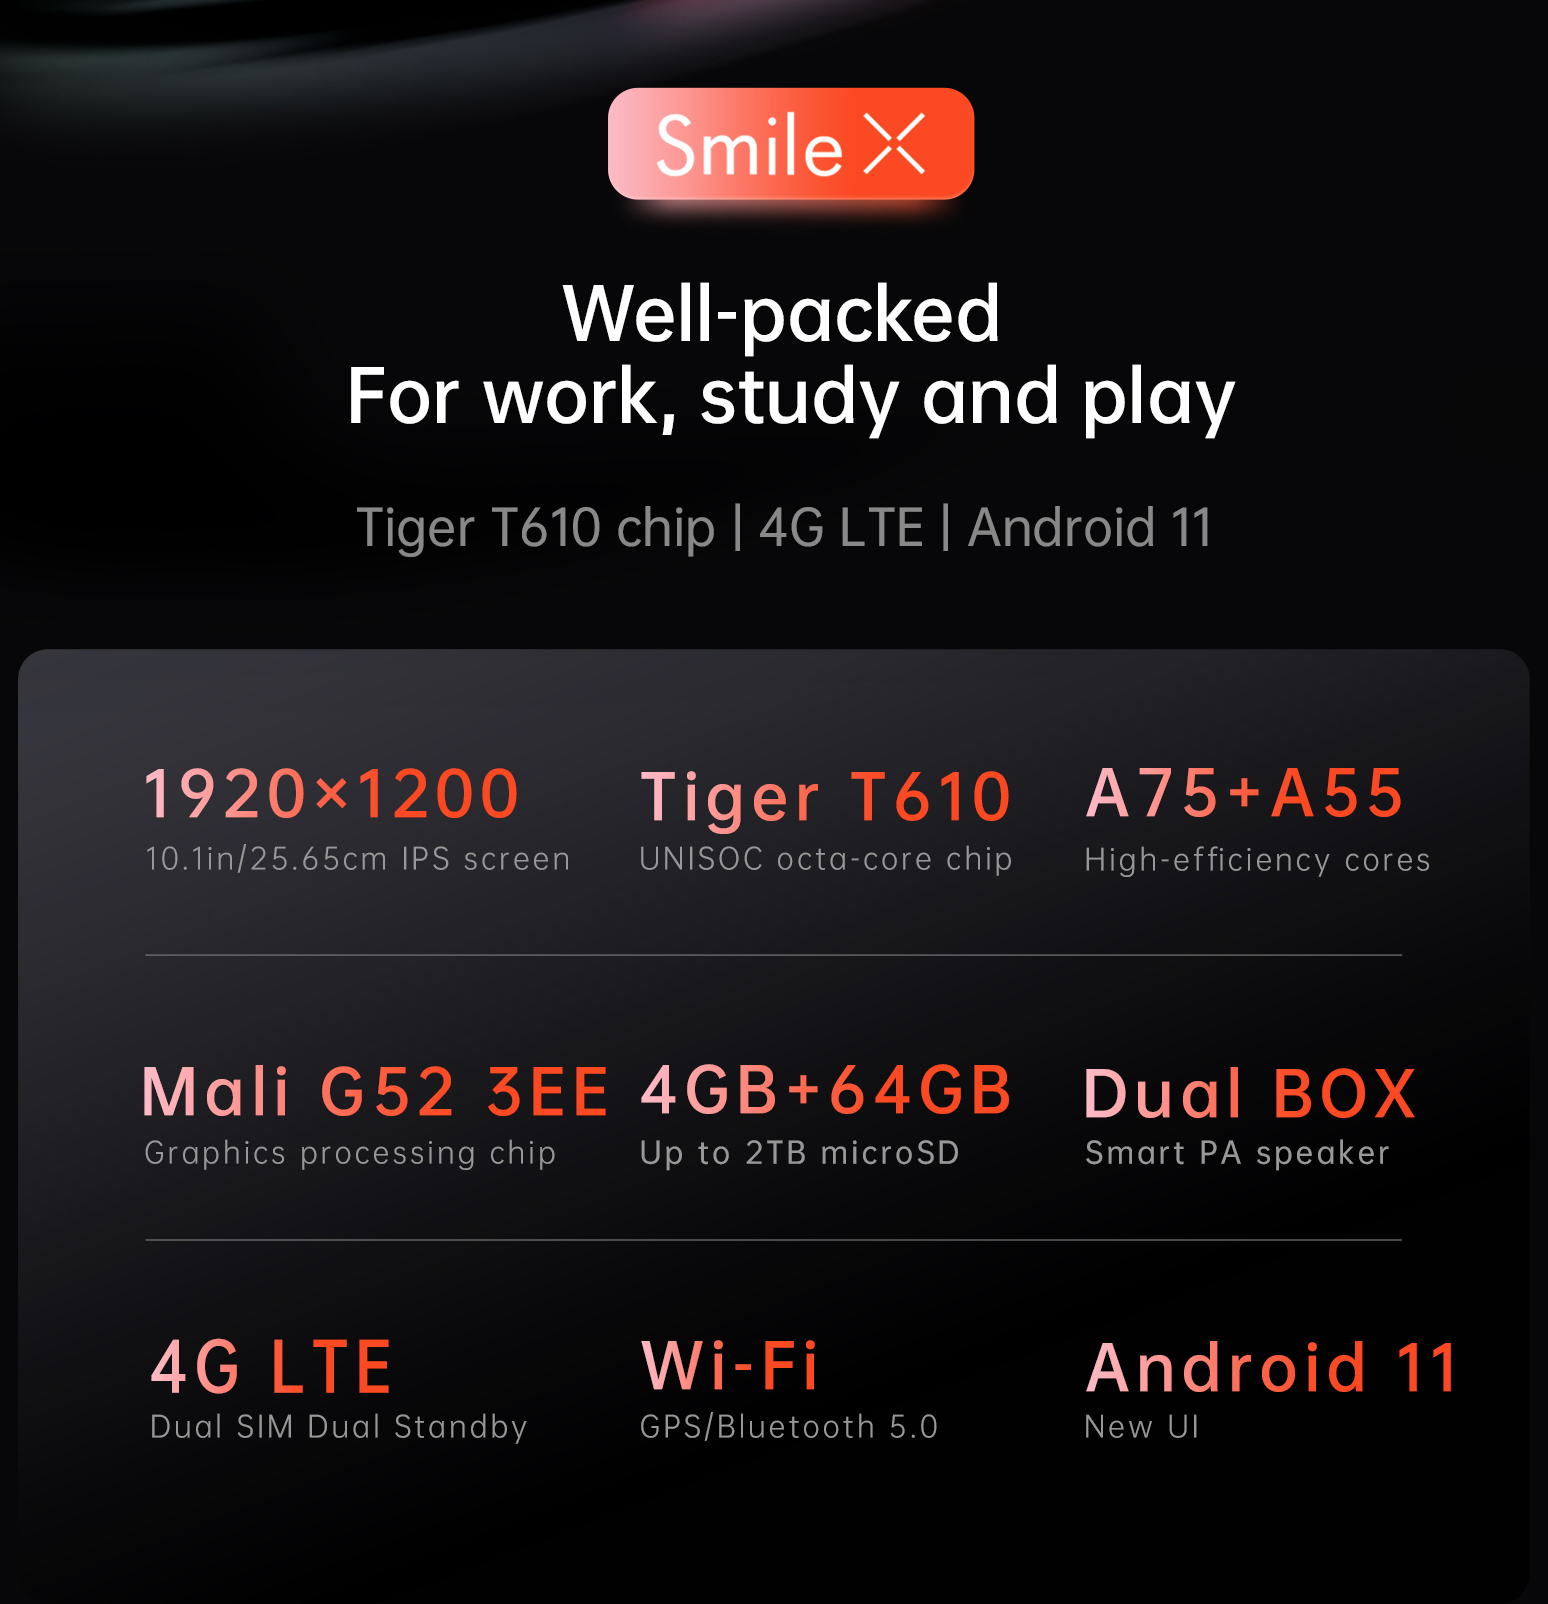 ข้อมูลเพิ่มเติมของ 【NEWEST】Alldocube Smile X Tablet 10.1 inch FHD Screen T610 Octa-Core 4GB RAM 64GB ROM Android 11 Dual Band WiFi Dual 4G Phone Call Tablet PC